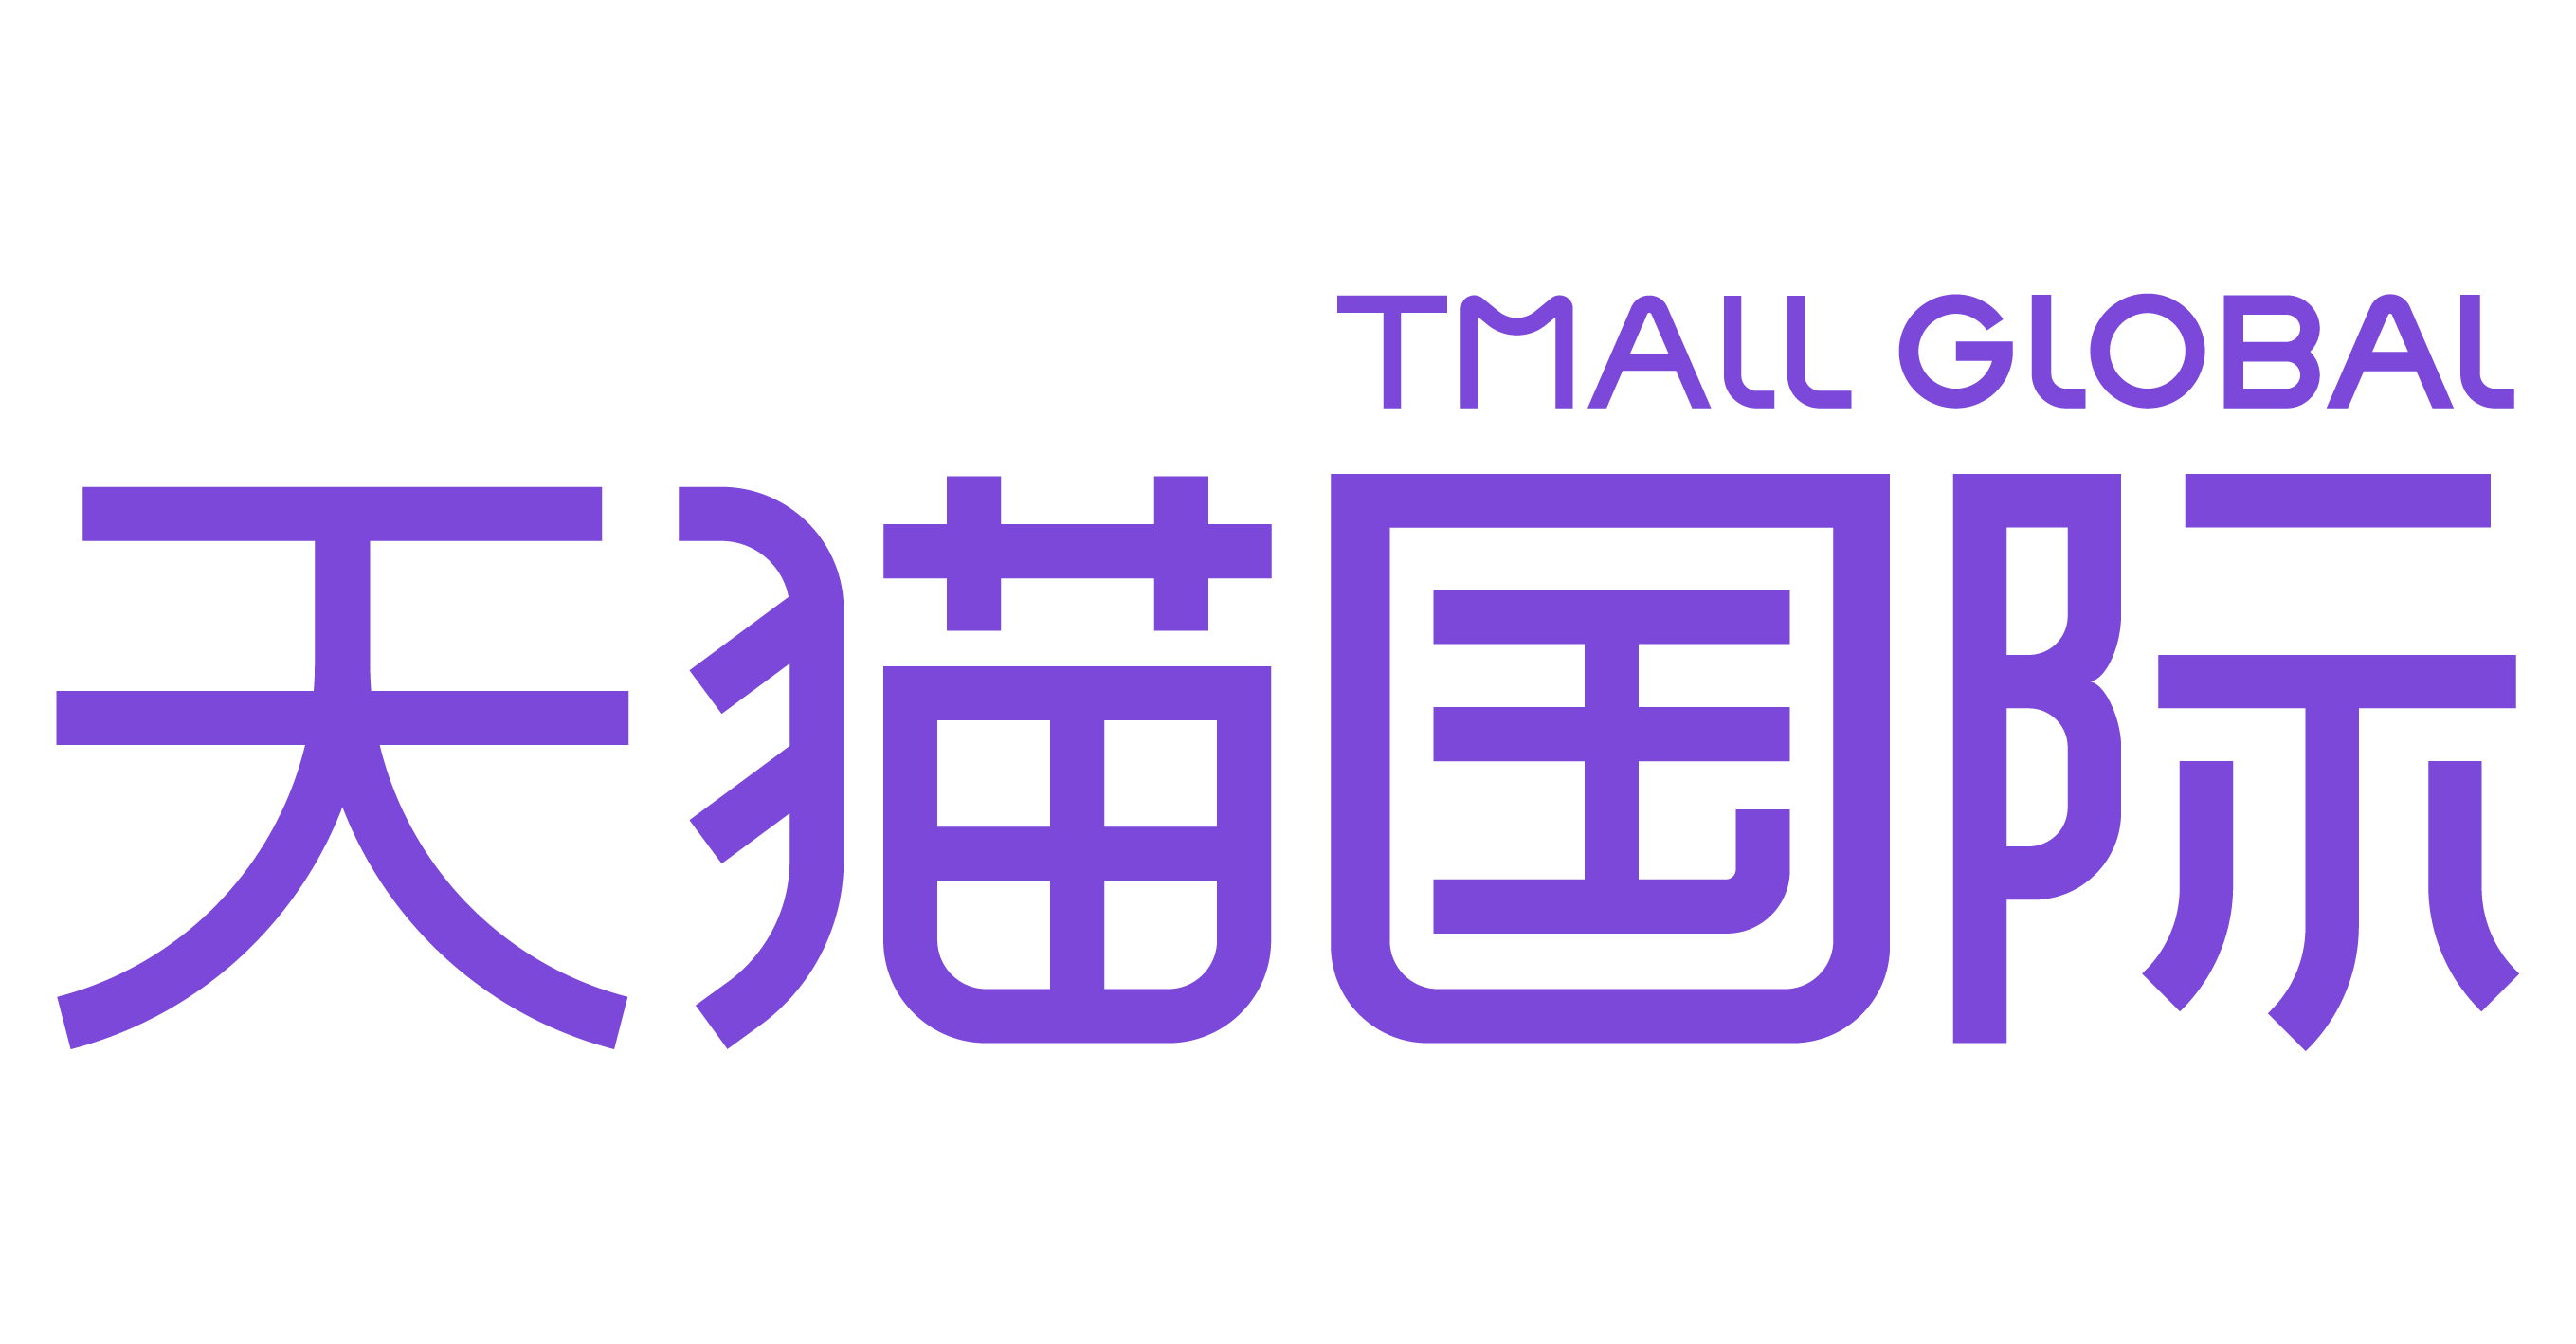 Tmall Global